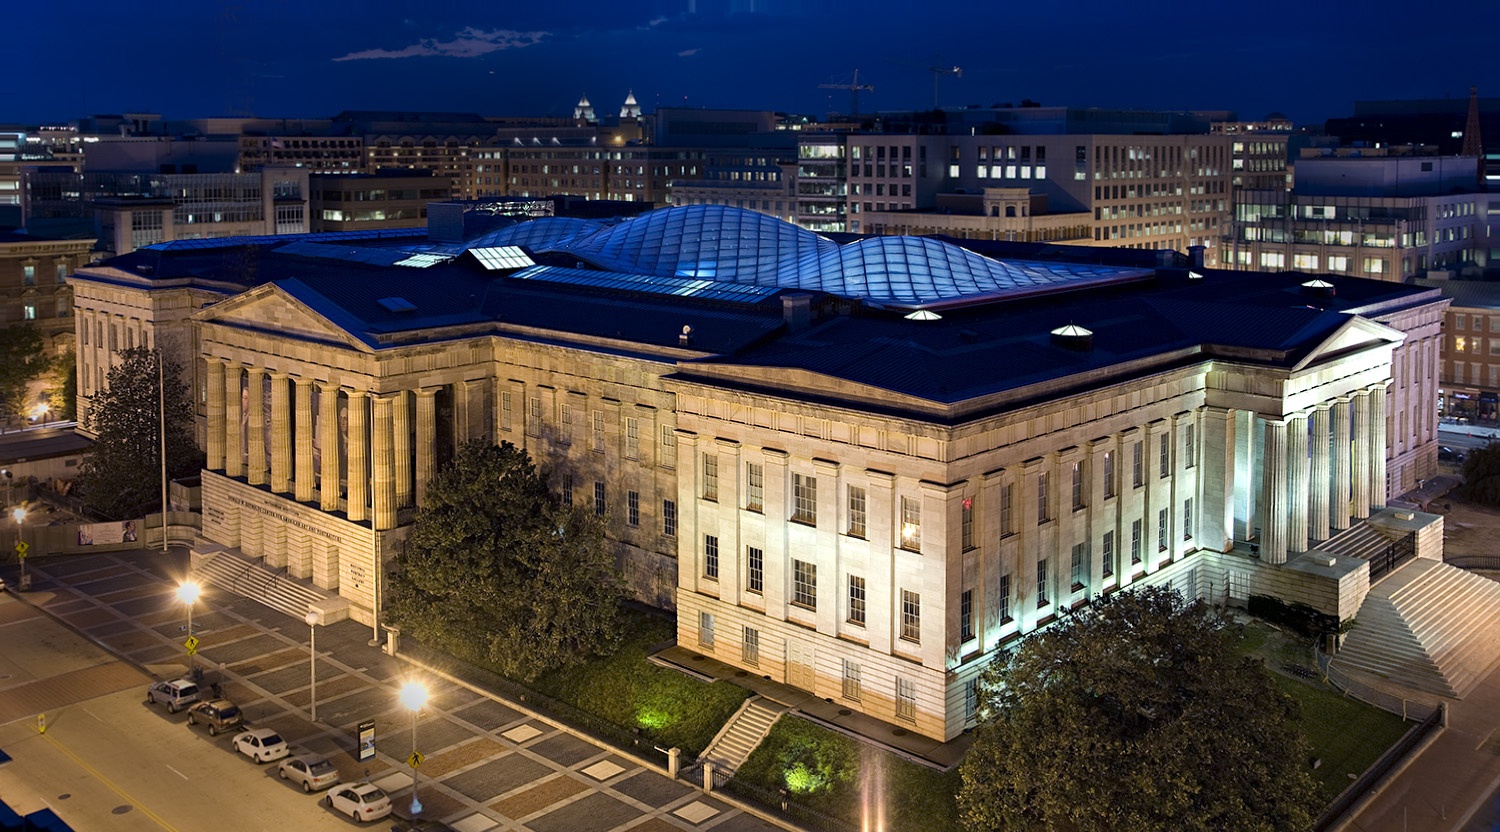 Prédio do Smithsonian Institute com sua edificação clássica, retilinea, comum nos prédio de Washington DC